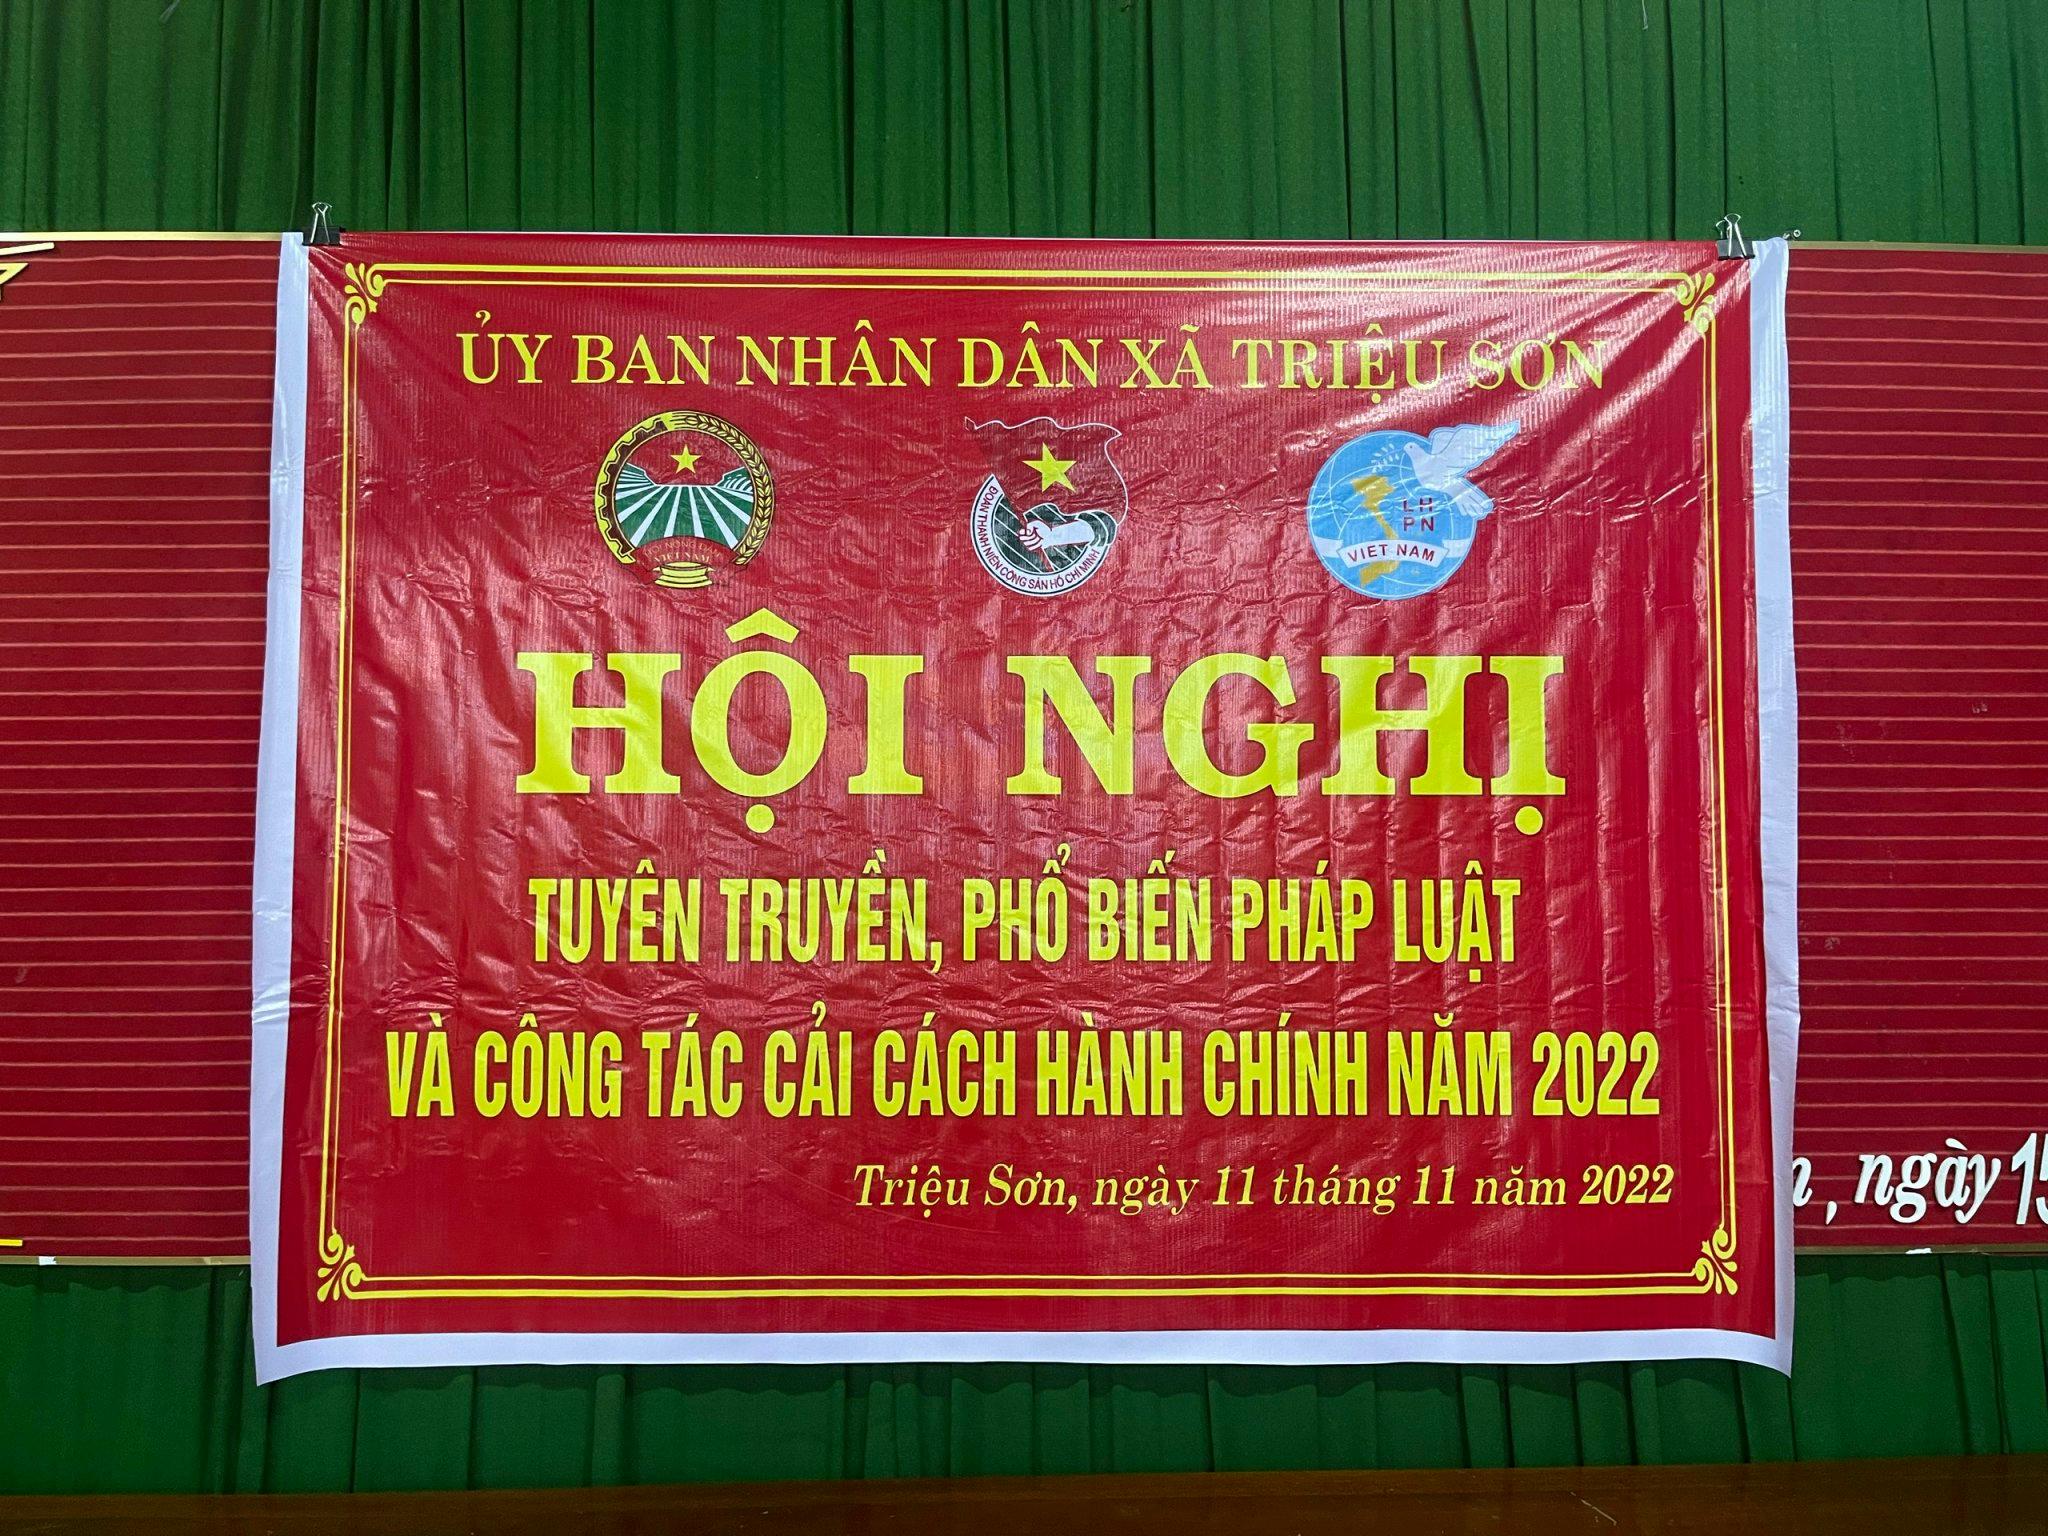 UBND xã Triệu Sơn tổ chức hội nghị tuyên truyền phổ biến pháp luật và công tác Cải cách hành chính...